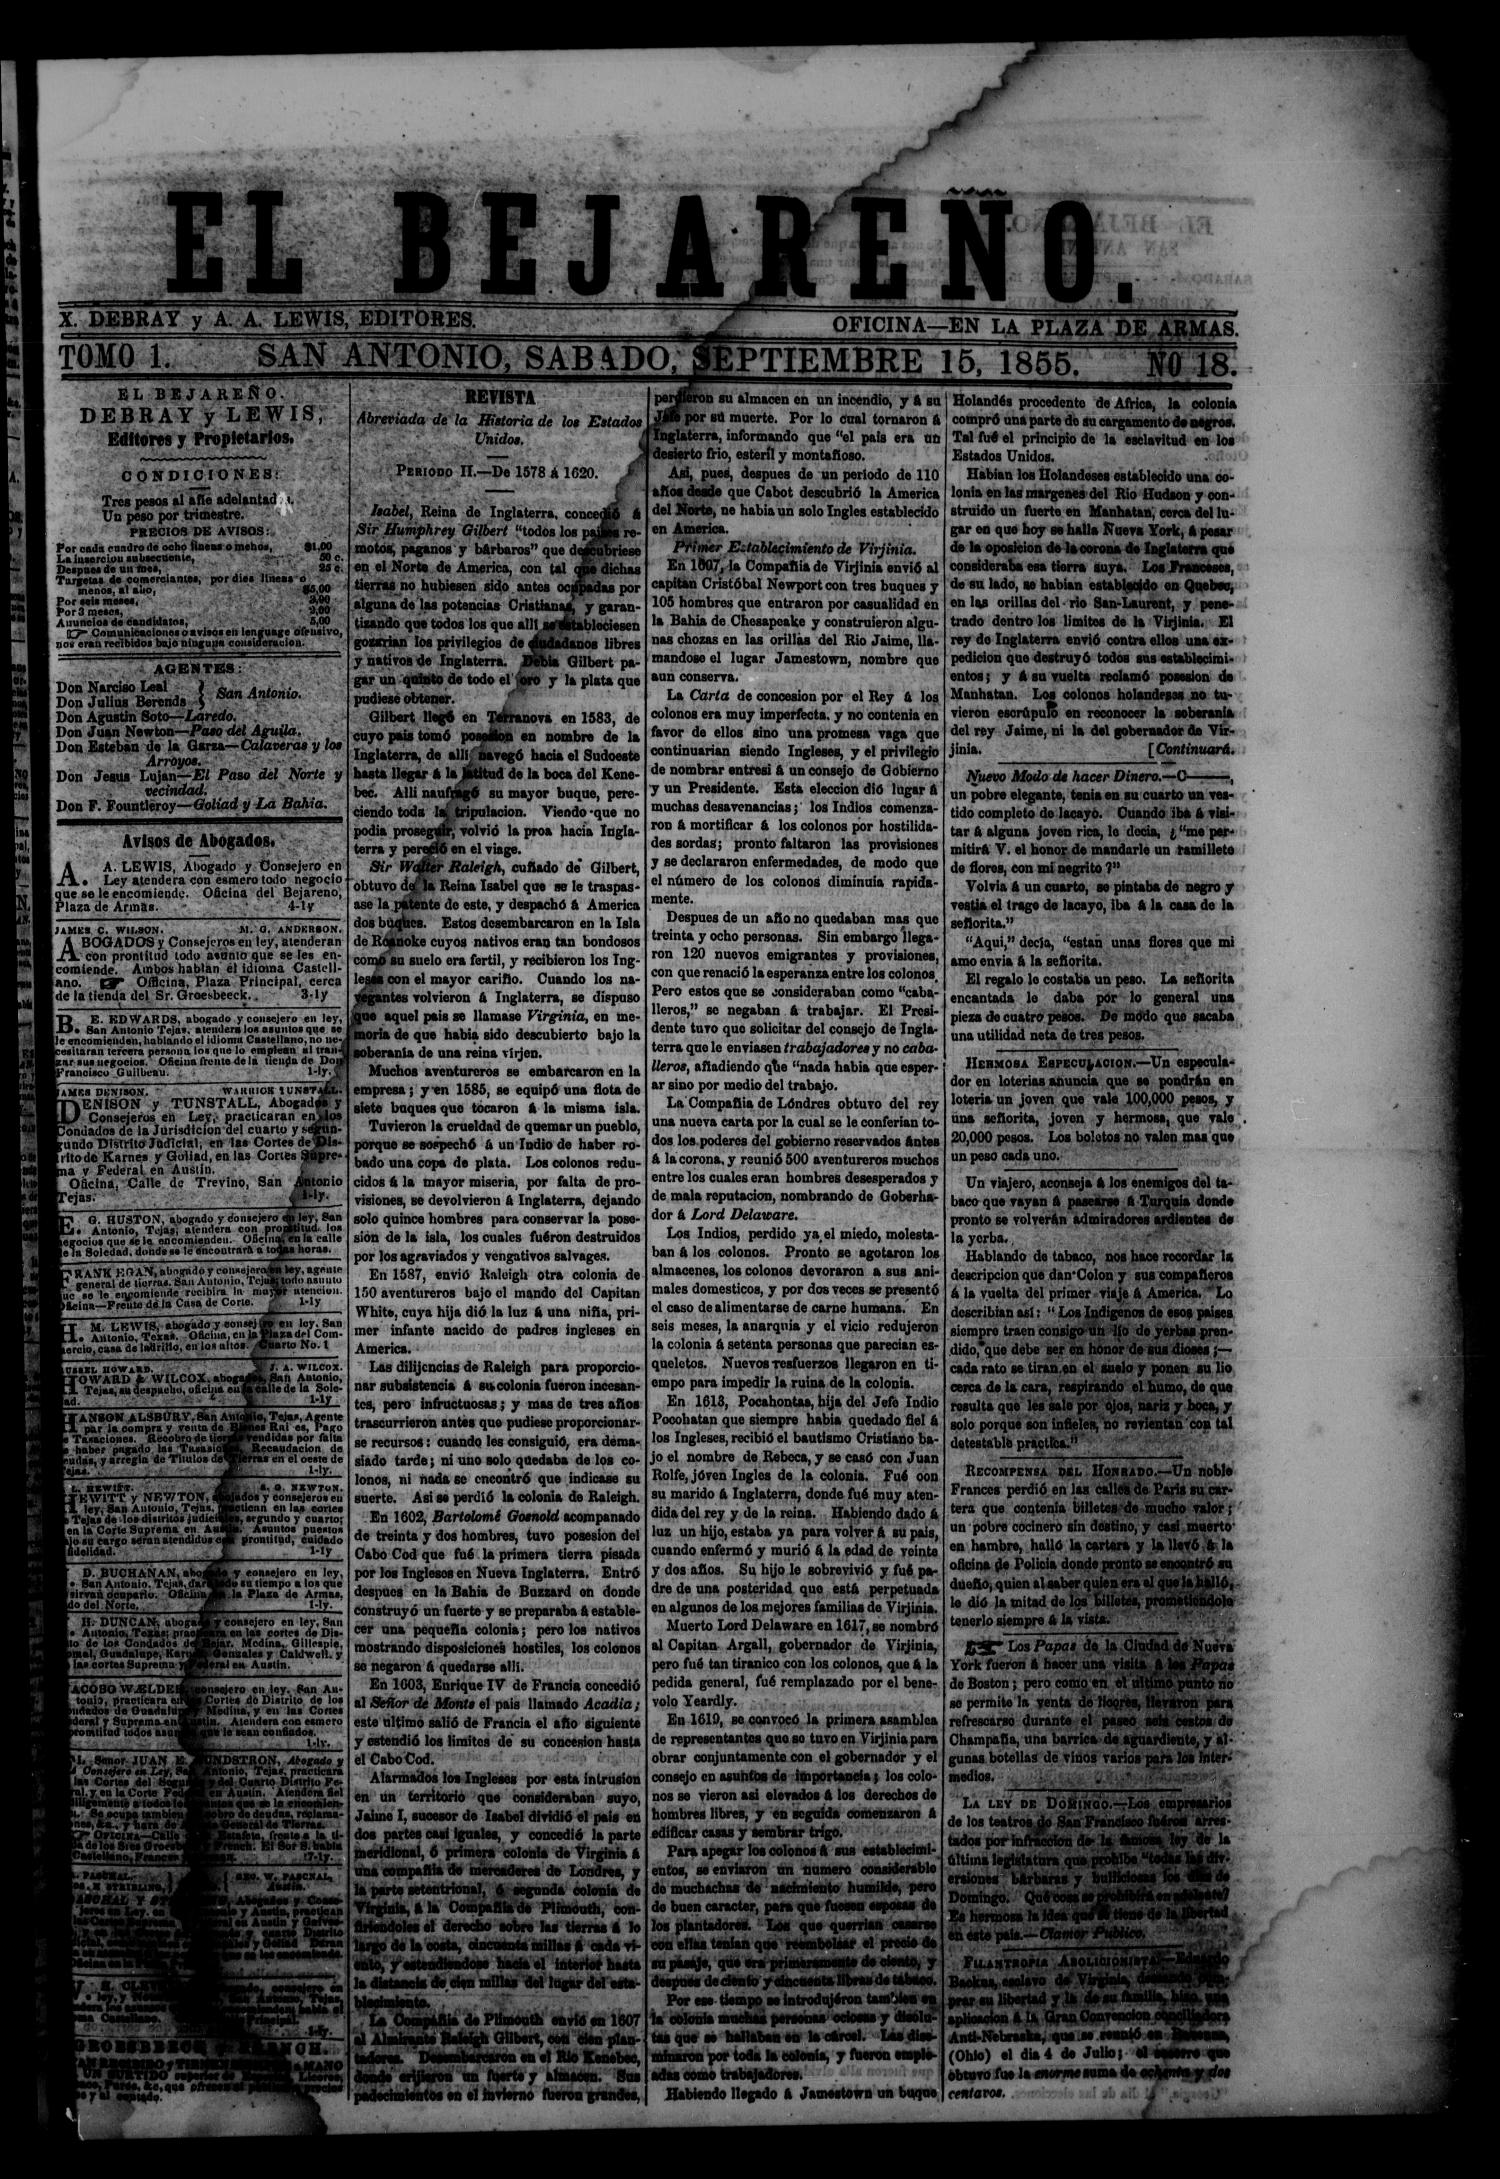 El Bejareño. (San Antonio, Tex.), Vol. 1, No. 18, Ed. 1 Saturday, September 15, 1855
                                                
                                                    [Sequence #]: 1 of 4
                                                